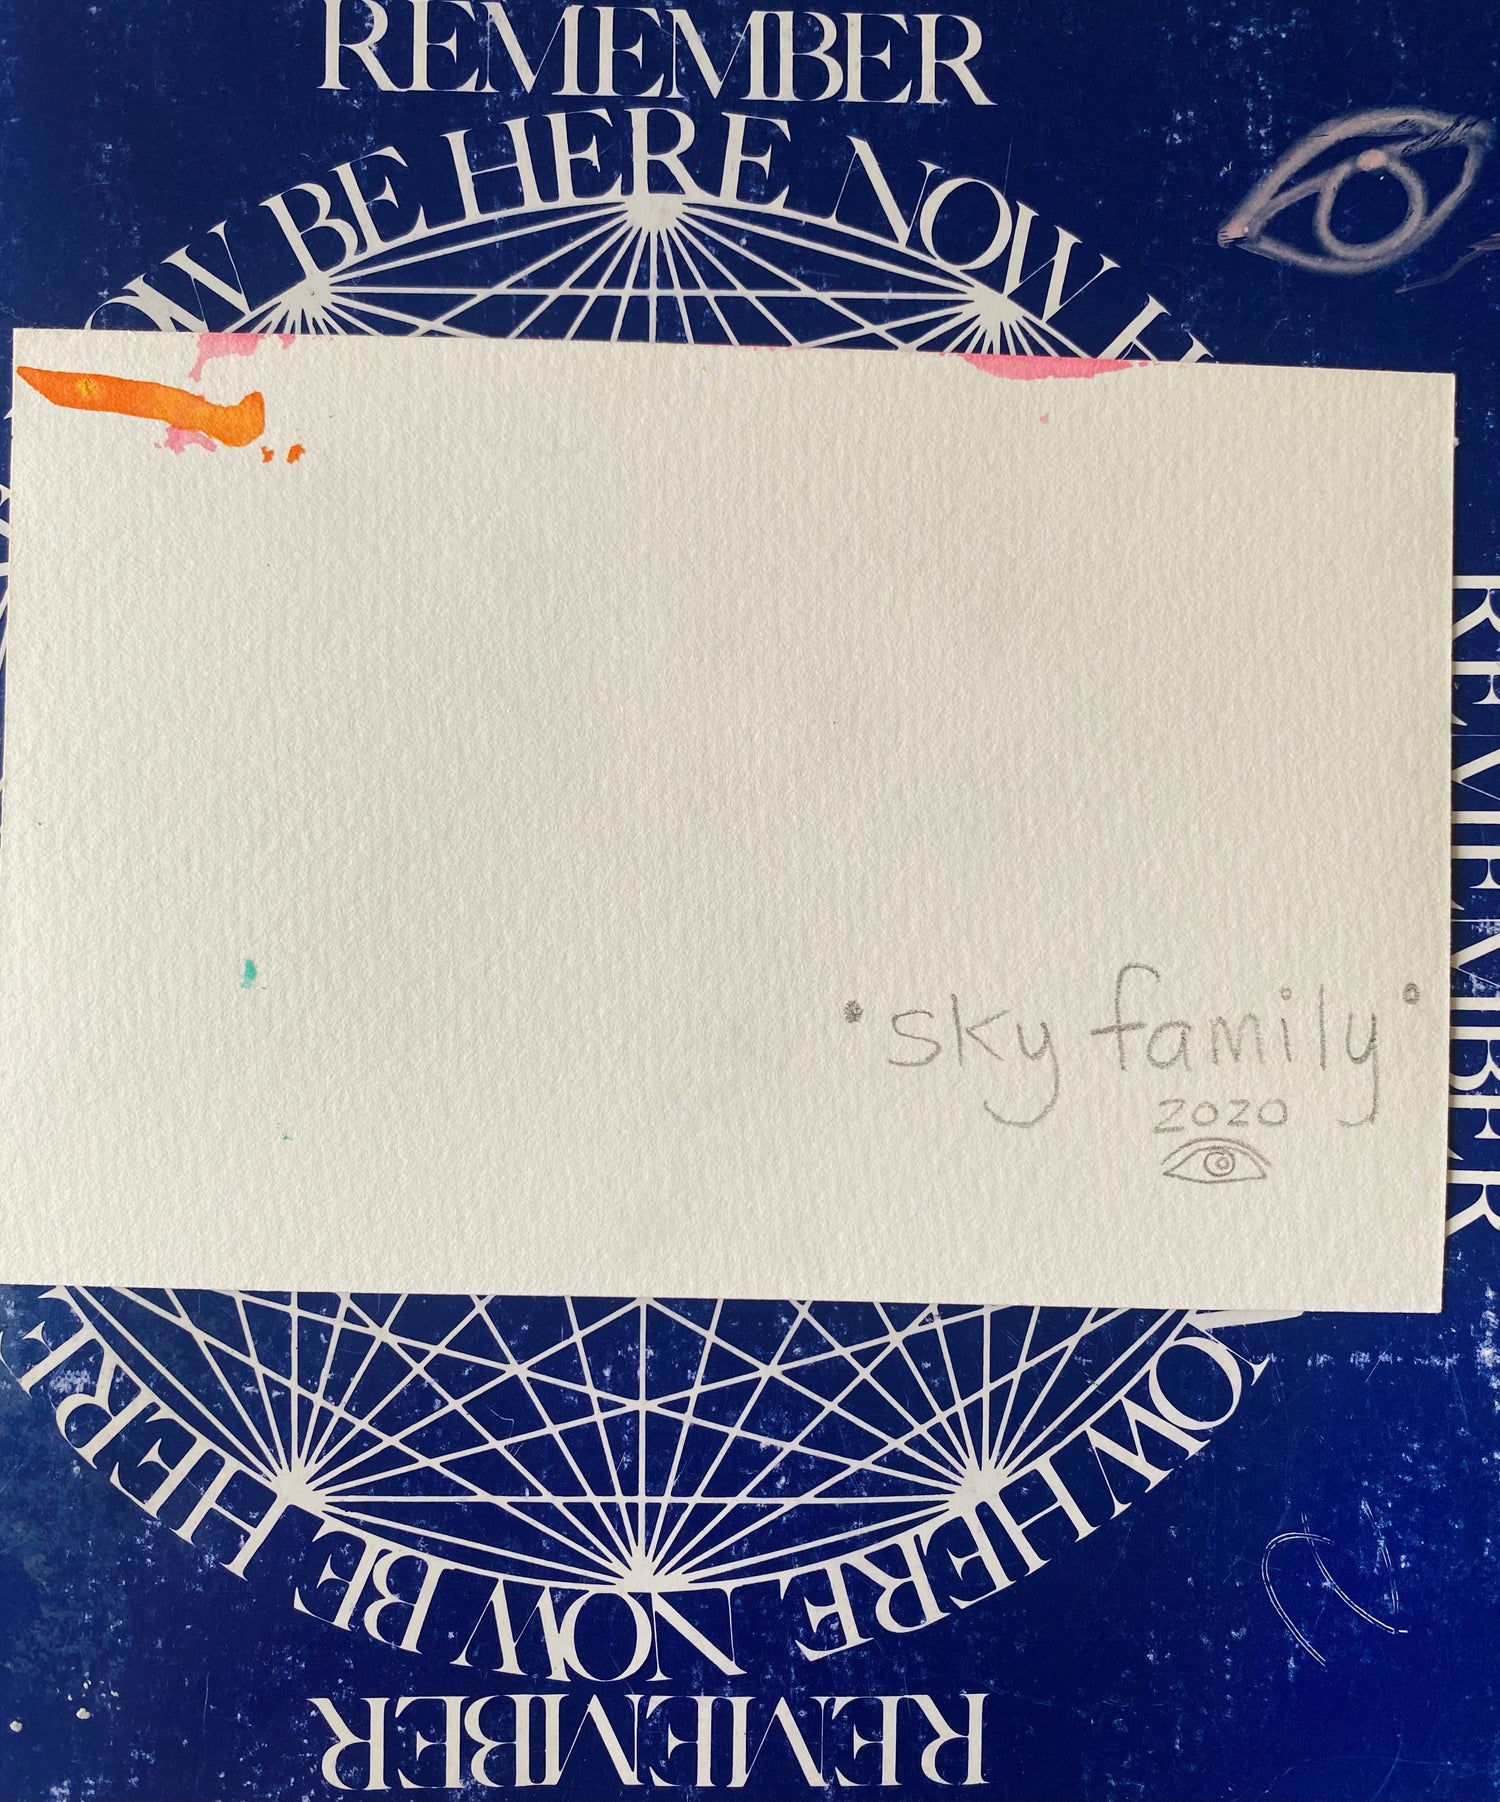 Sky Family- Original 4x6 - Moon Room Shop and Wellness